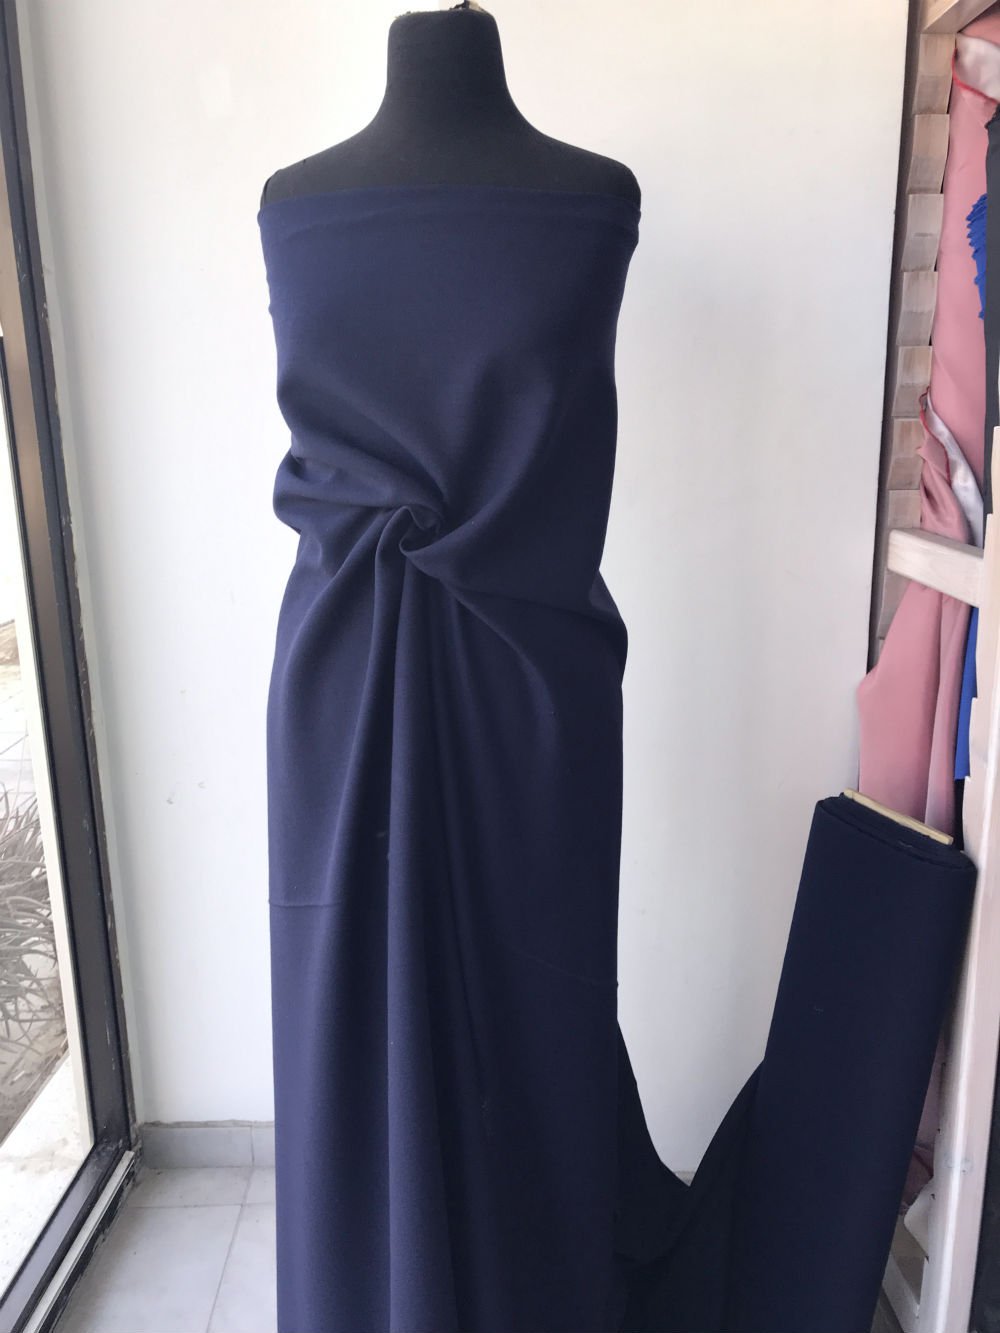 blue wool crepe fabric, dark navy blue, pebble crepe fabric made in UK skirt dress suit wool georgette